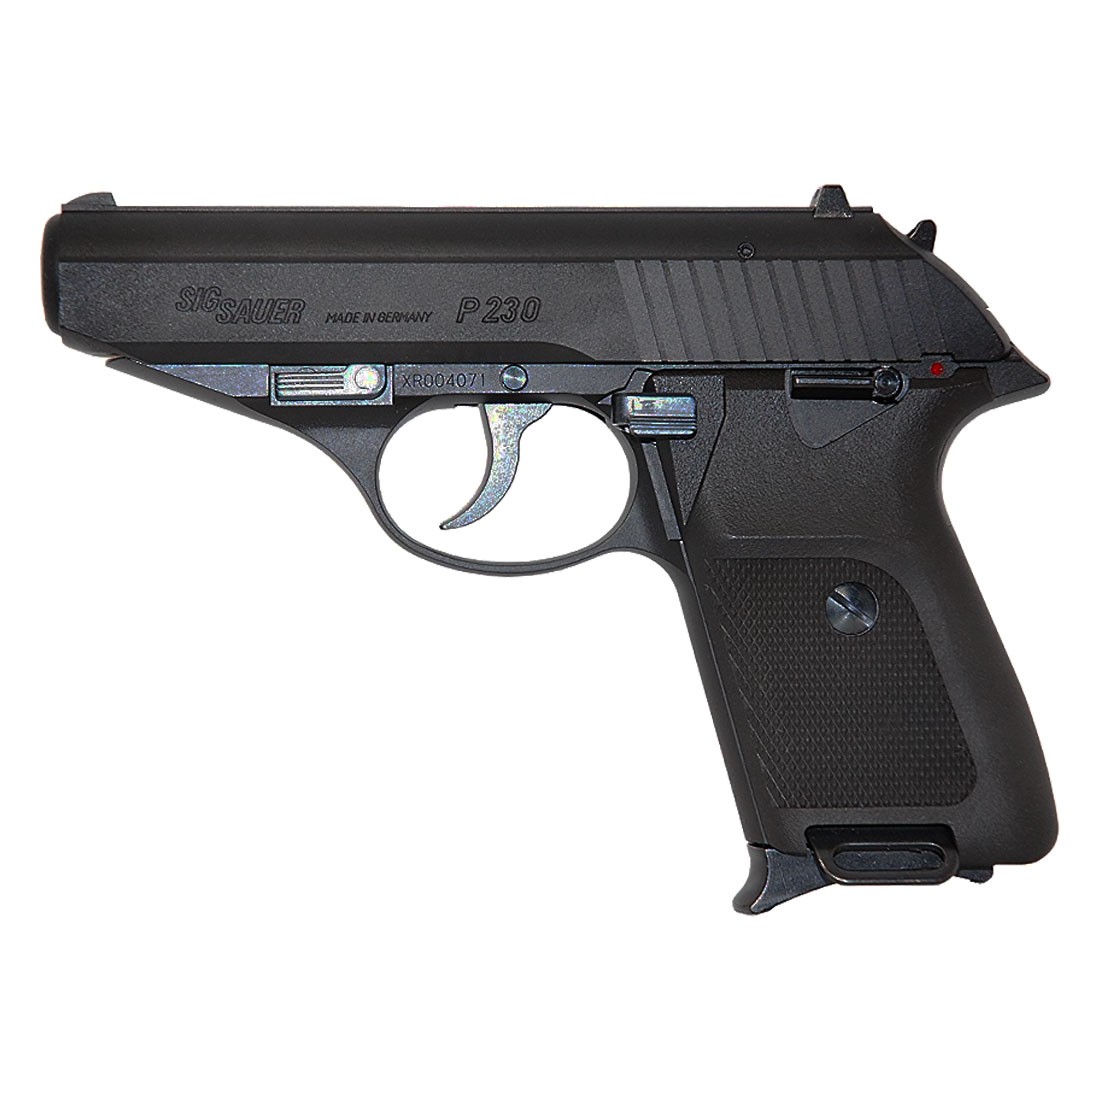 KSC Sig Sauer P230 JP GBB Pistol